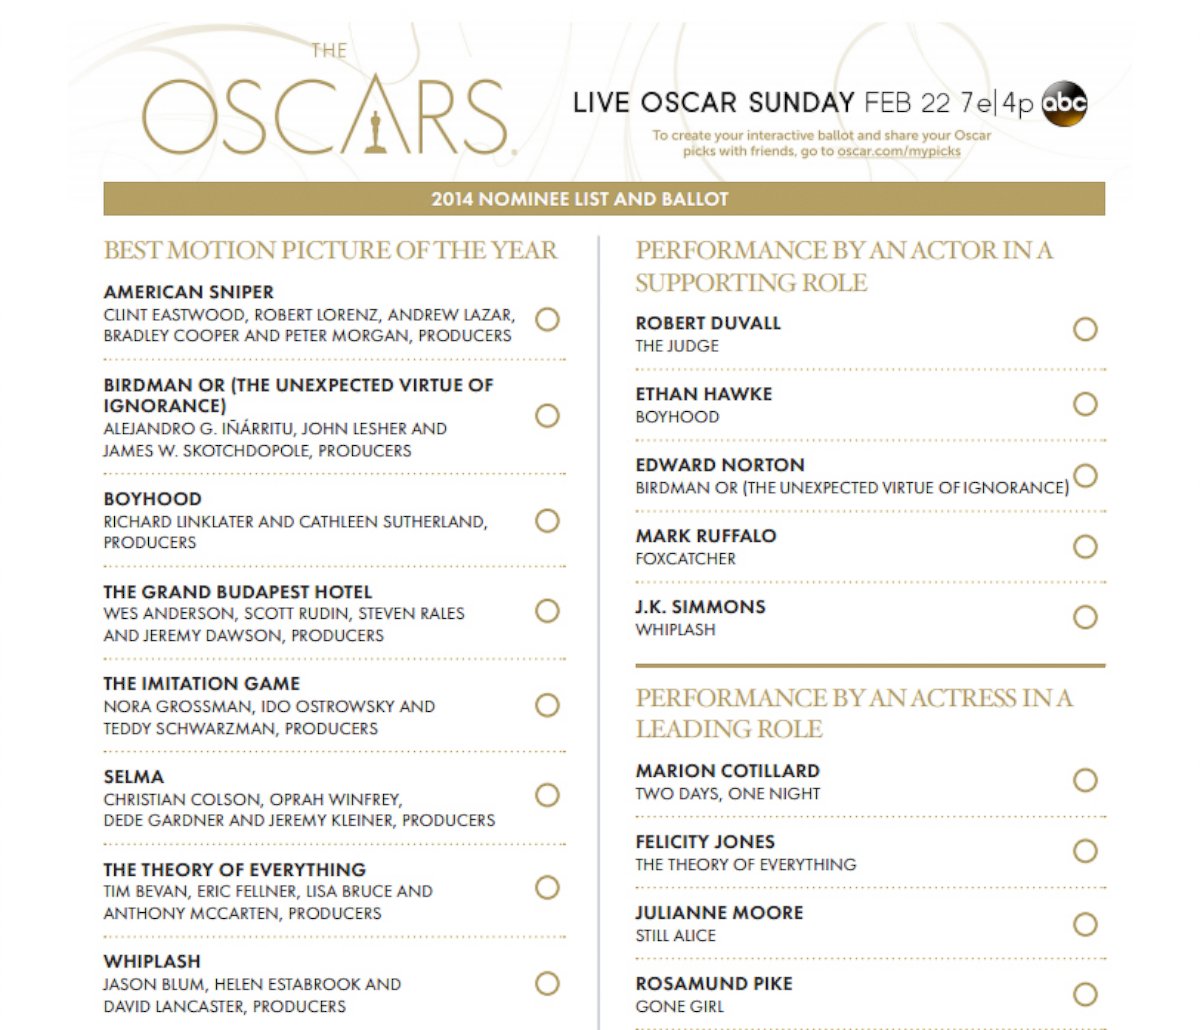 PHOTO: The official 2015 Oscars ballot.